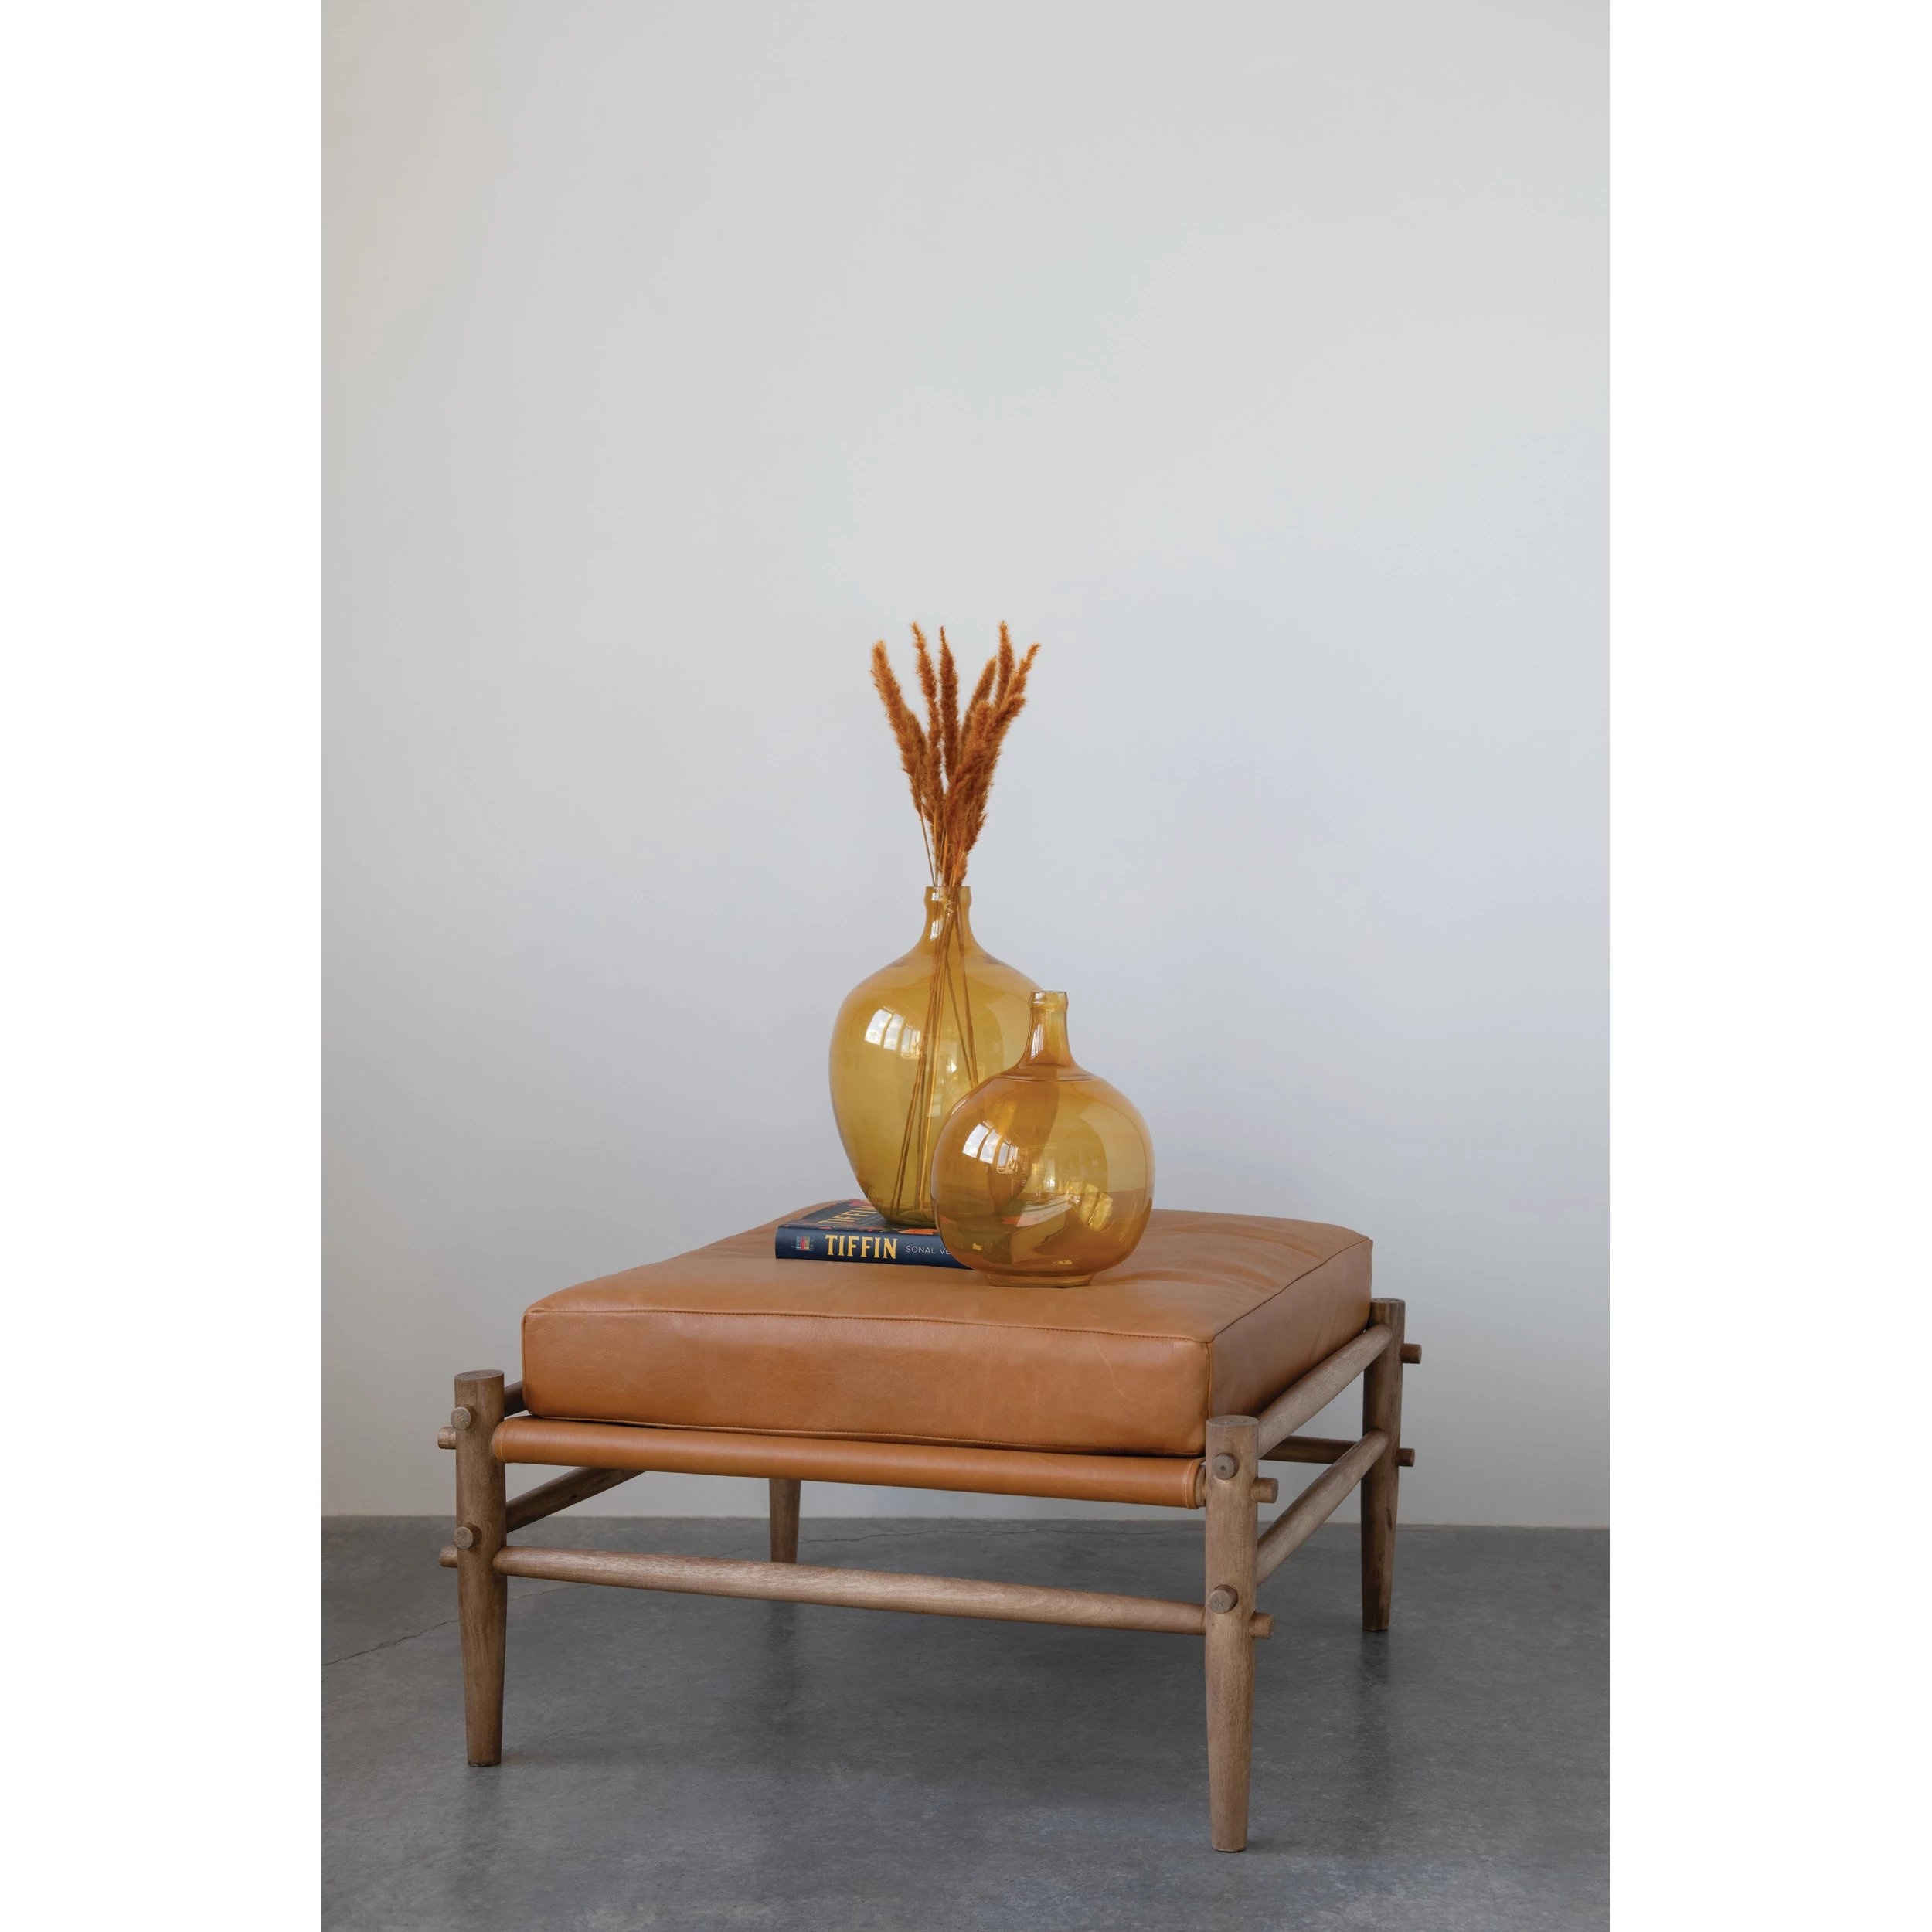 Mango Wood Ottoman with Leather Cushion - Image 2